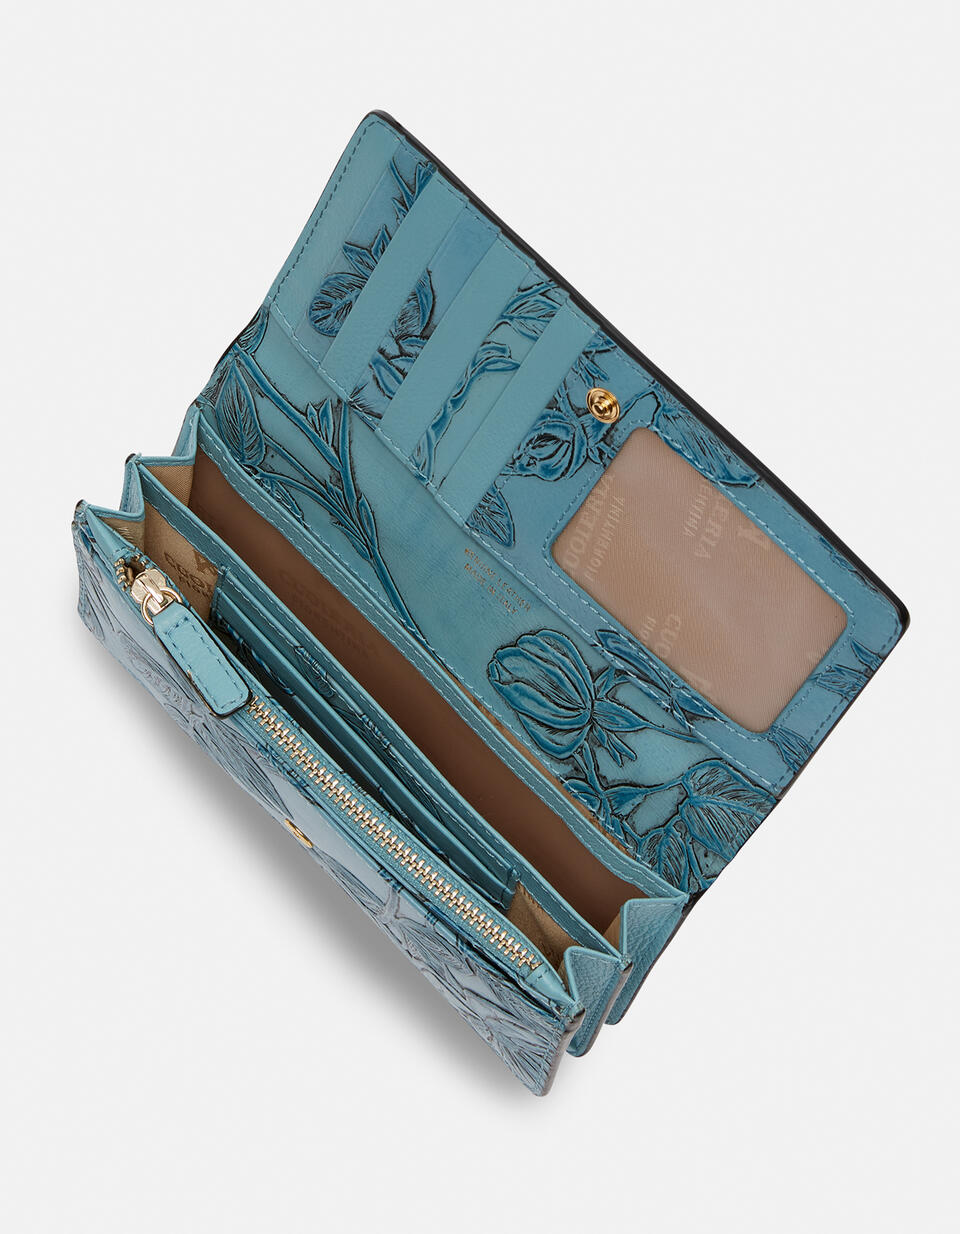 Accordian style wallet CELESTE  - Women's Wallets - Women's Wallets - Wallets - Cuoieria Fiorentina